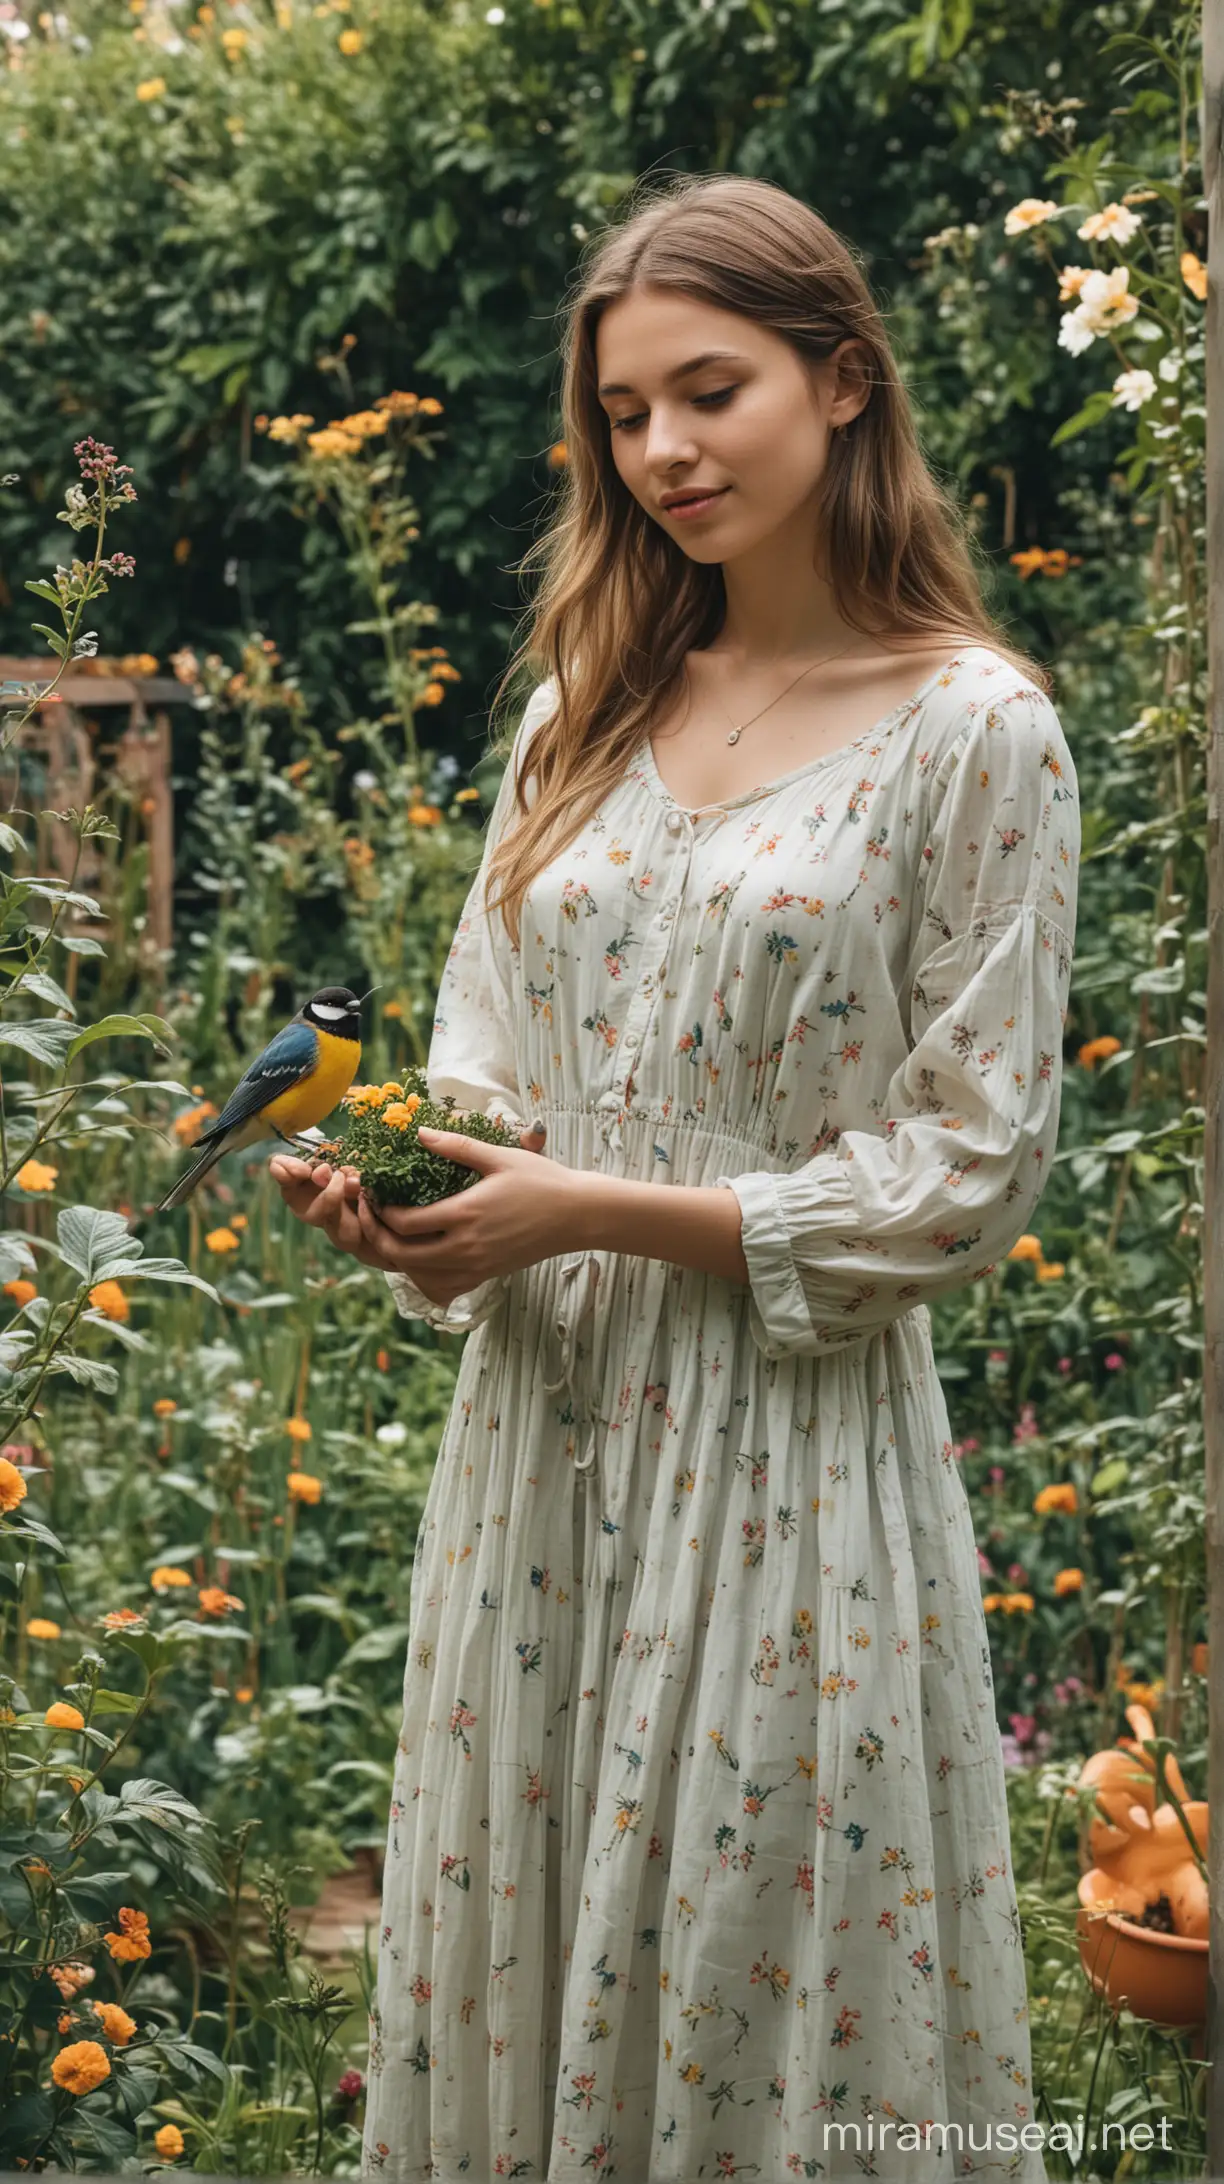 A quite girl in garden with a bird